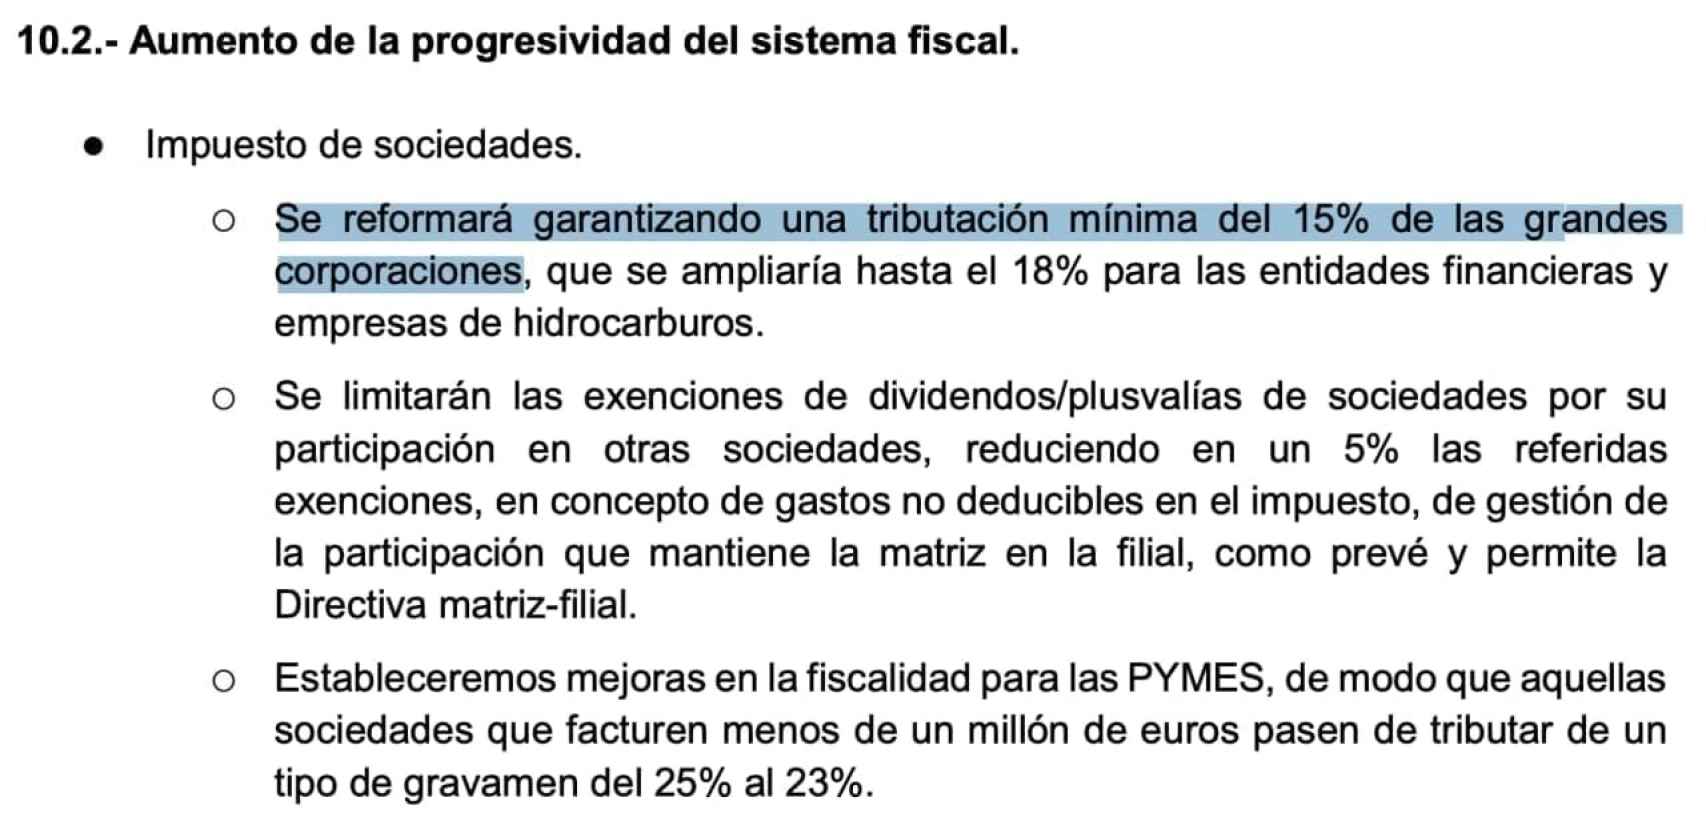 Extracto del capítulo fiscal en el programa de coalición entre PSOE y Unidas Podemos.